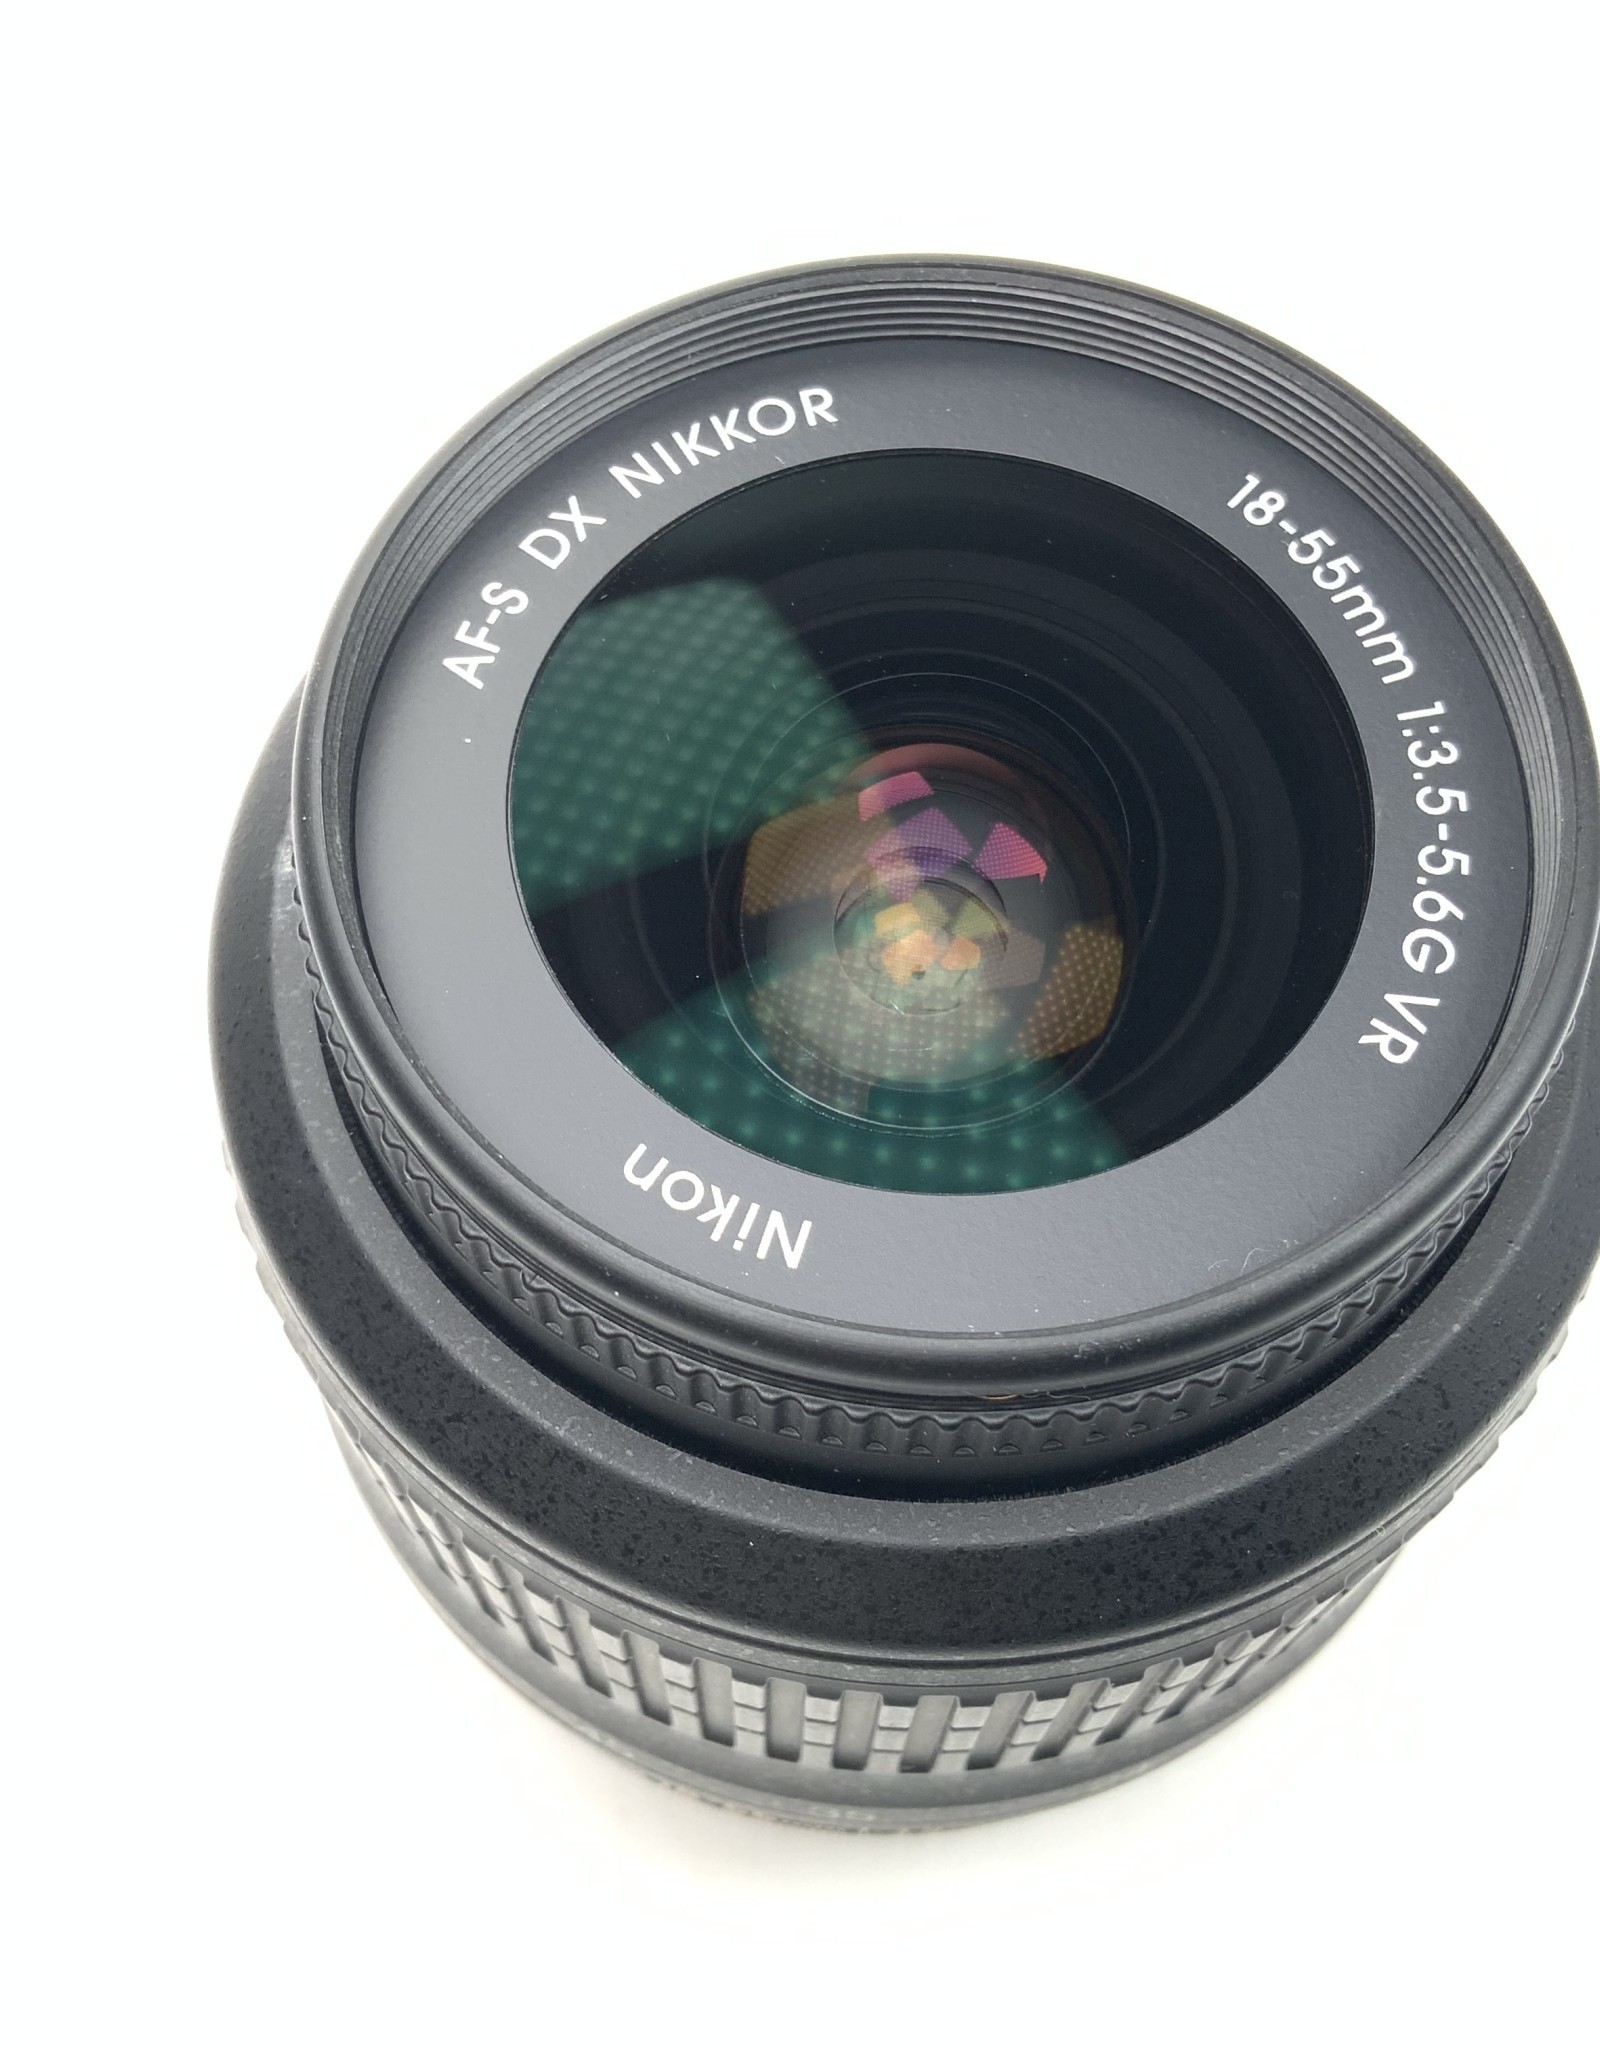 NIKON Nikon AF-S Nikkor 18-55mm f3.5-5.6G VR Lens Used